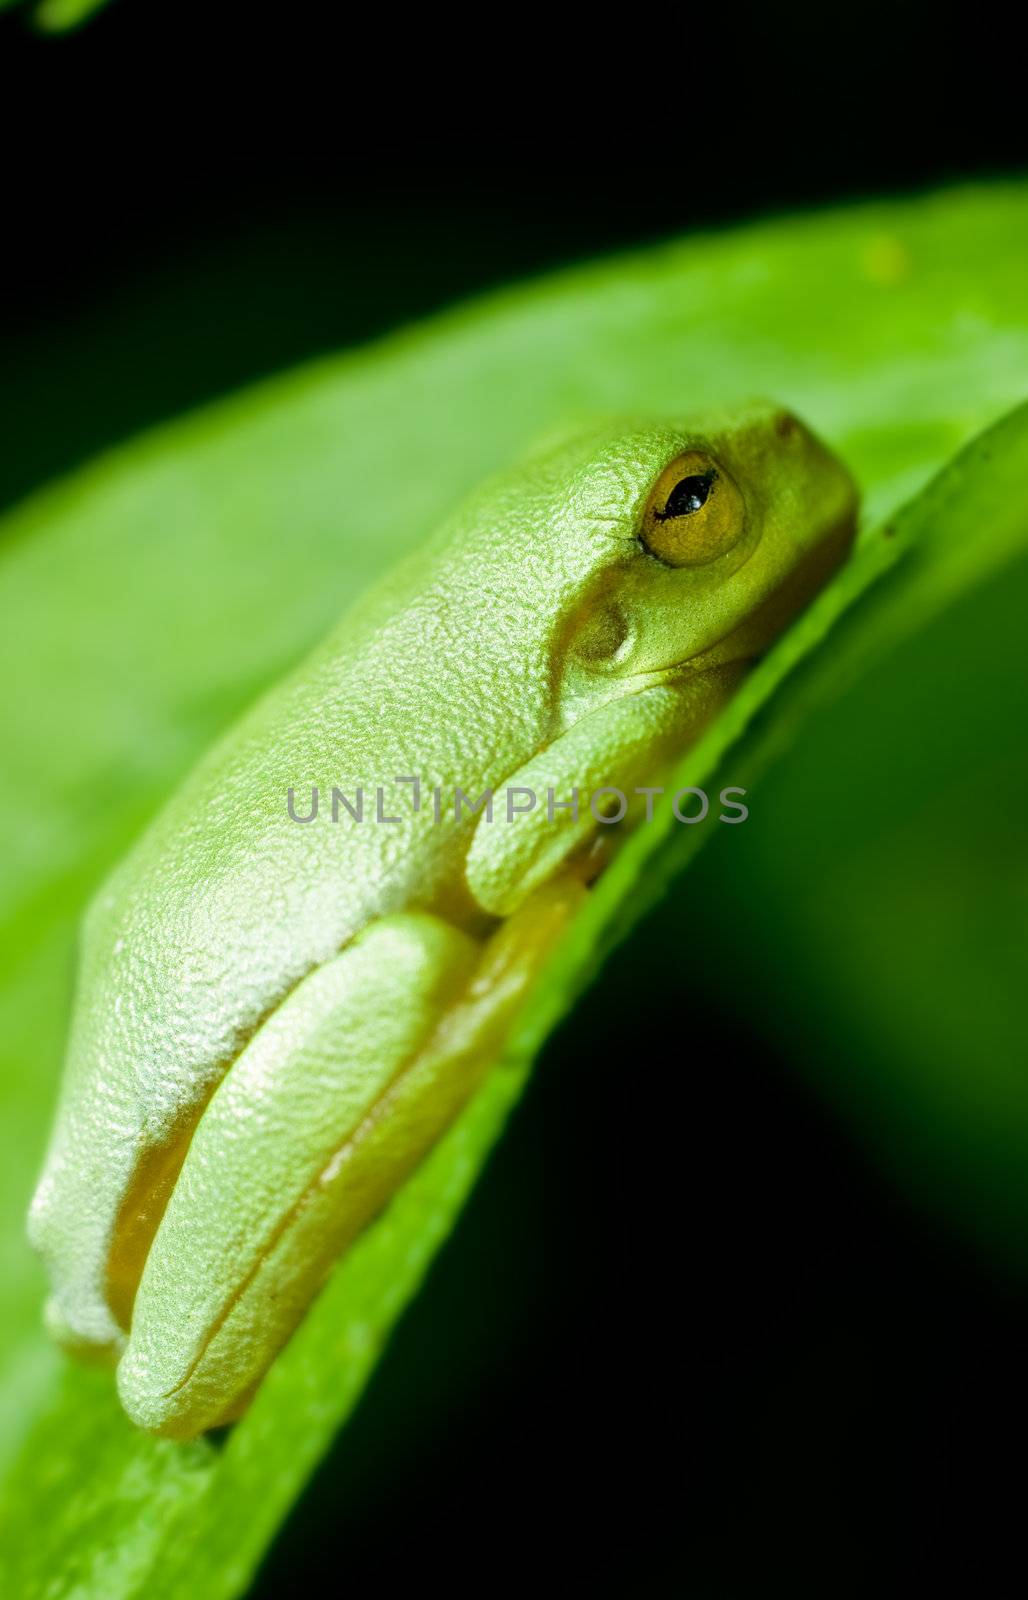 A dwarf green tree frog sitting on a green leaf